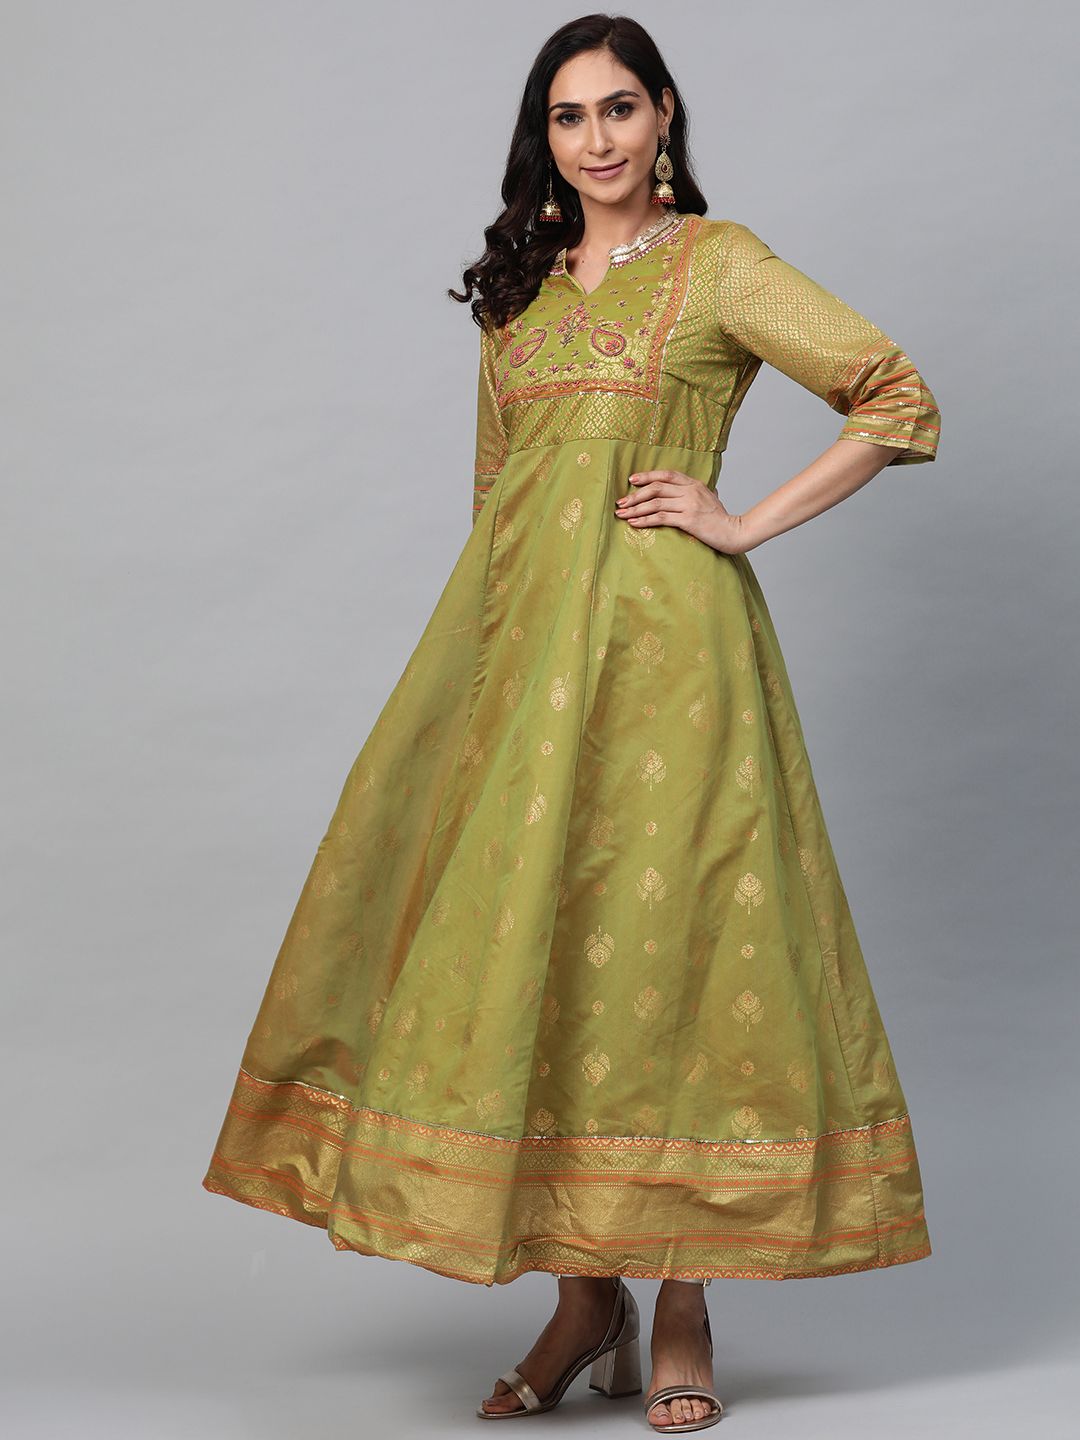 AURELIA Women Green & Golden Printed Maxi Dress Price in India